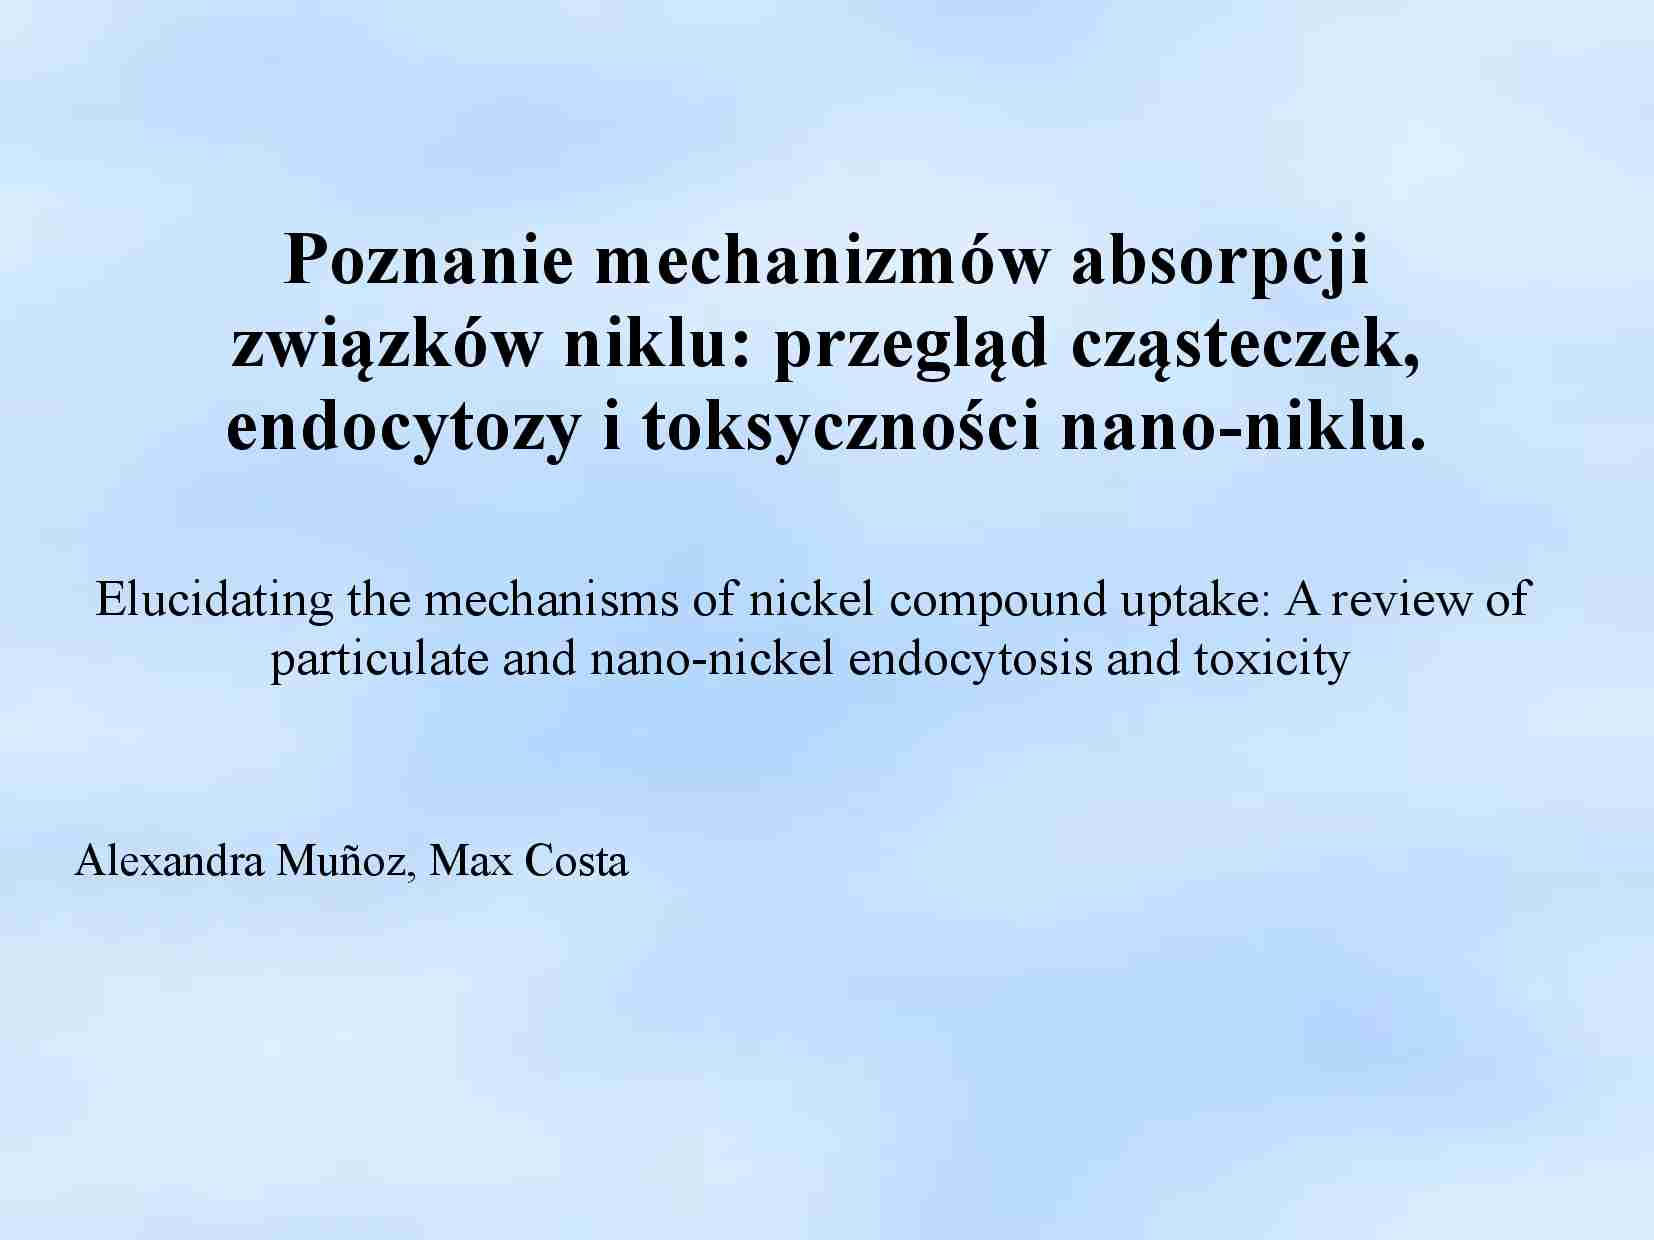 przegląd cząsteczek,   endocytozy i toksyczności nano-niklu - strona 1